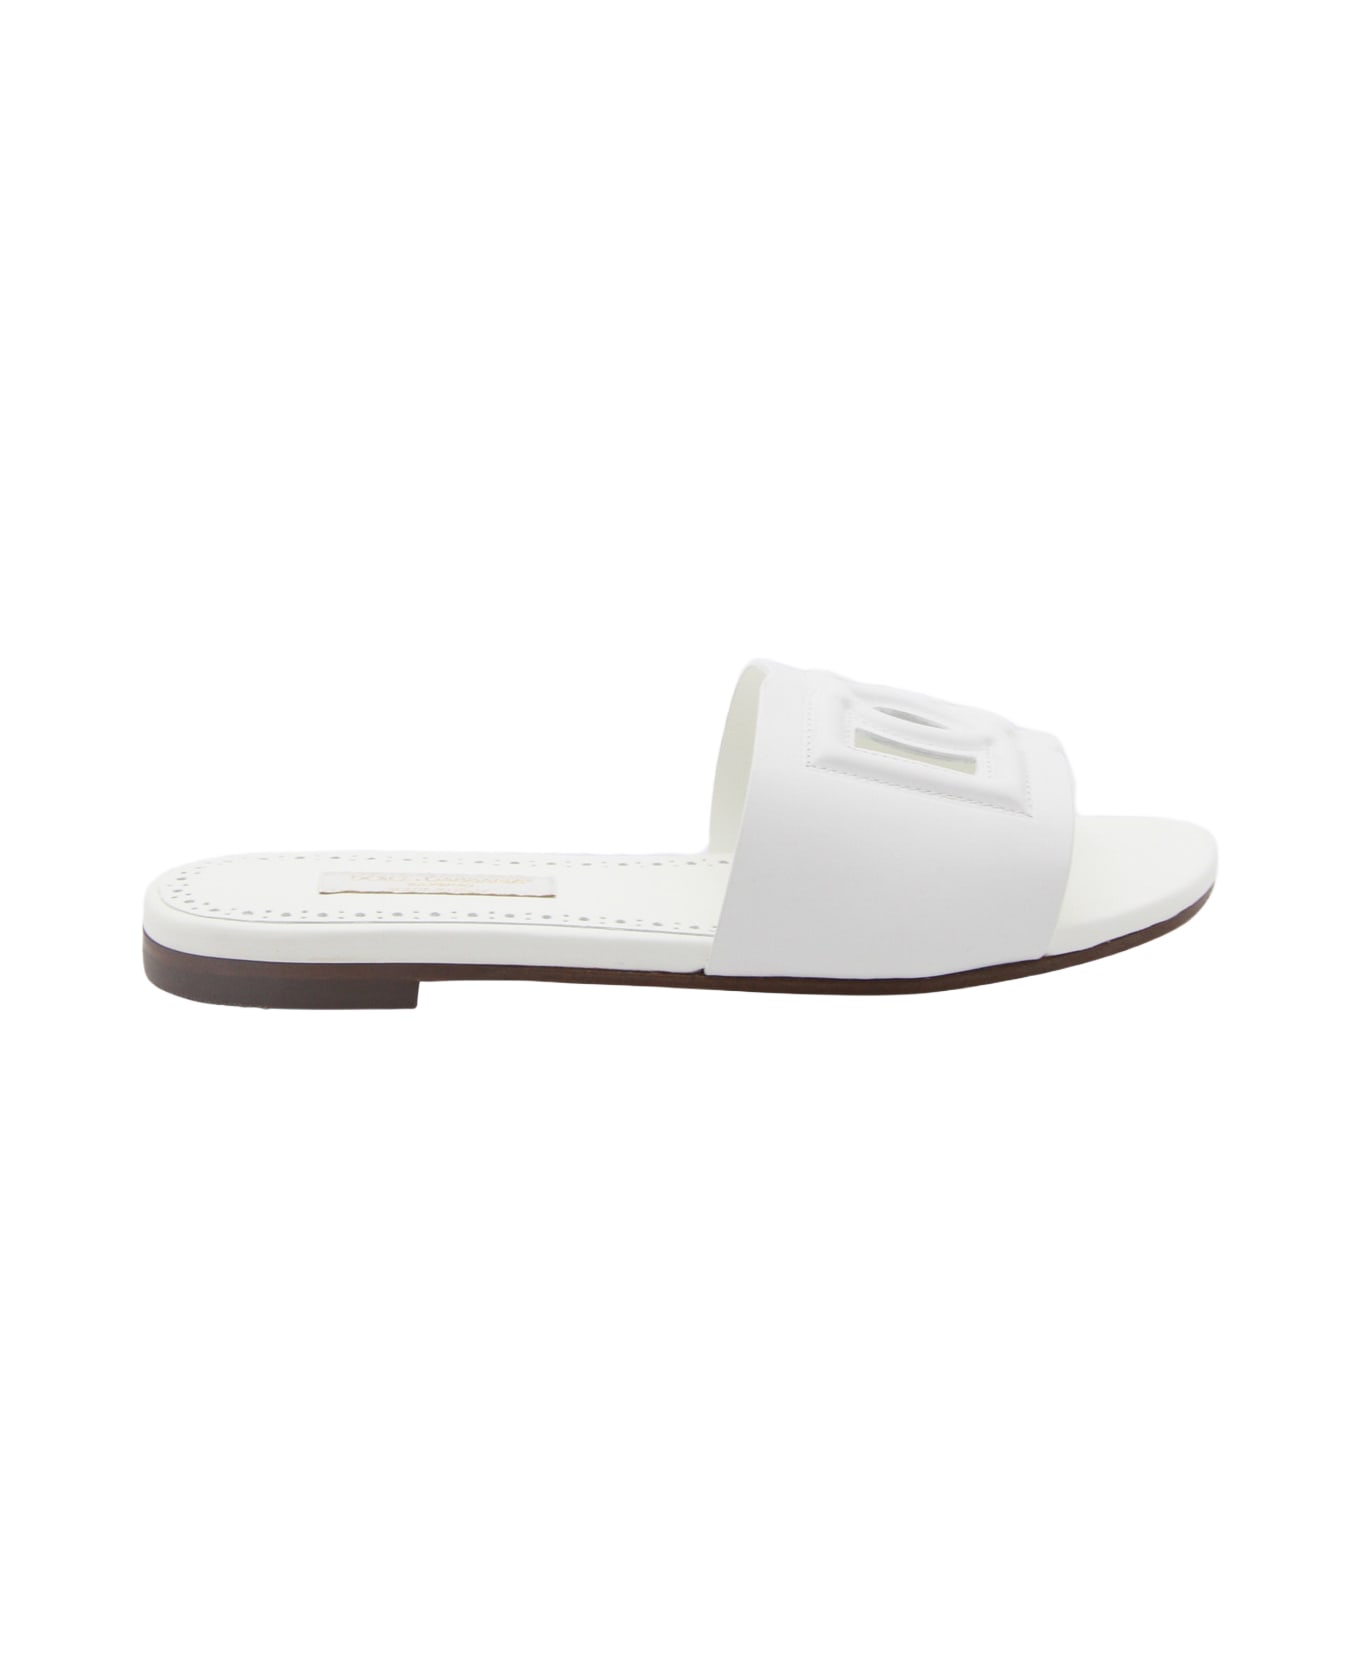 Dolce & Gabbana White Leather Dg Logo Flats - White シューズ